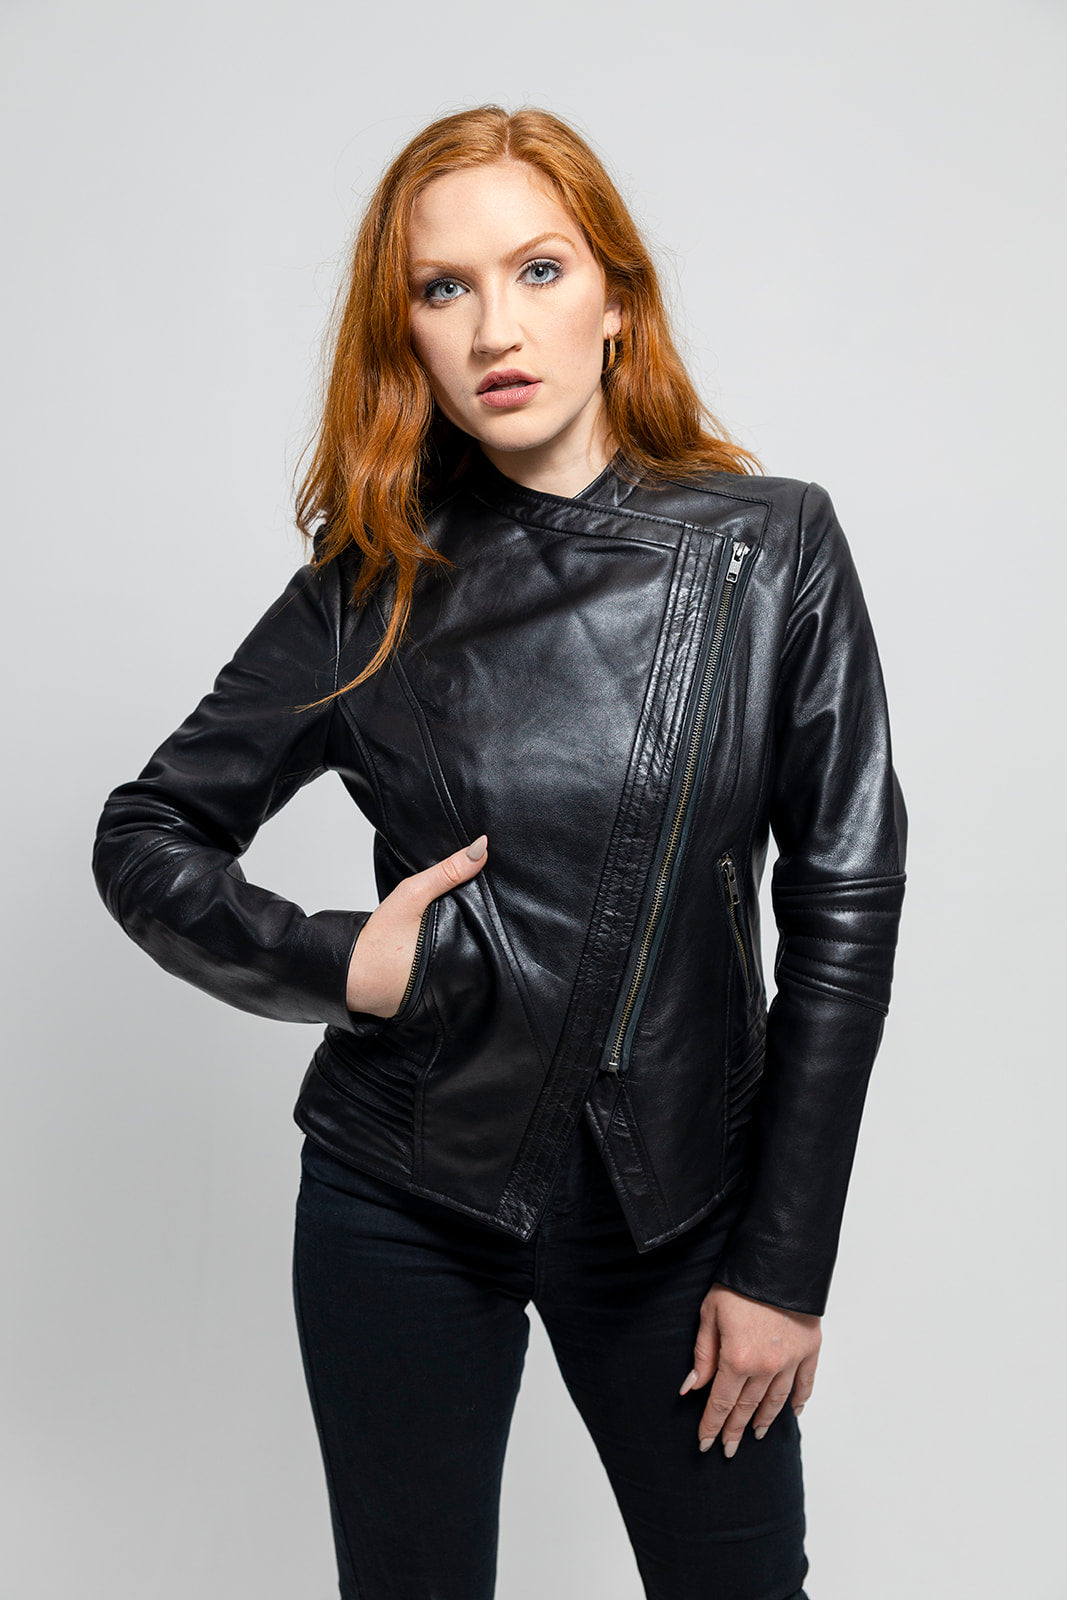 Trish Womens Leather Jacket Black Women's Leather Jacket Whet Blu NYC   